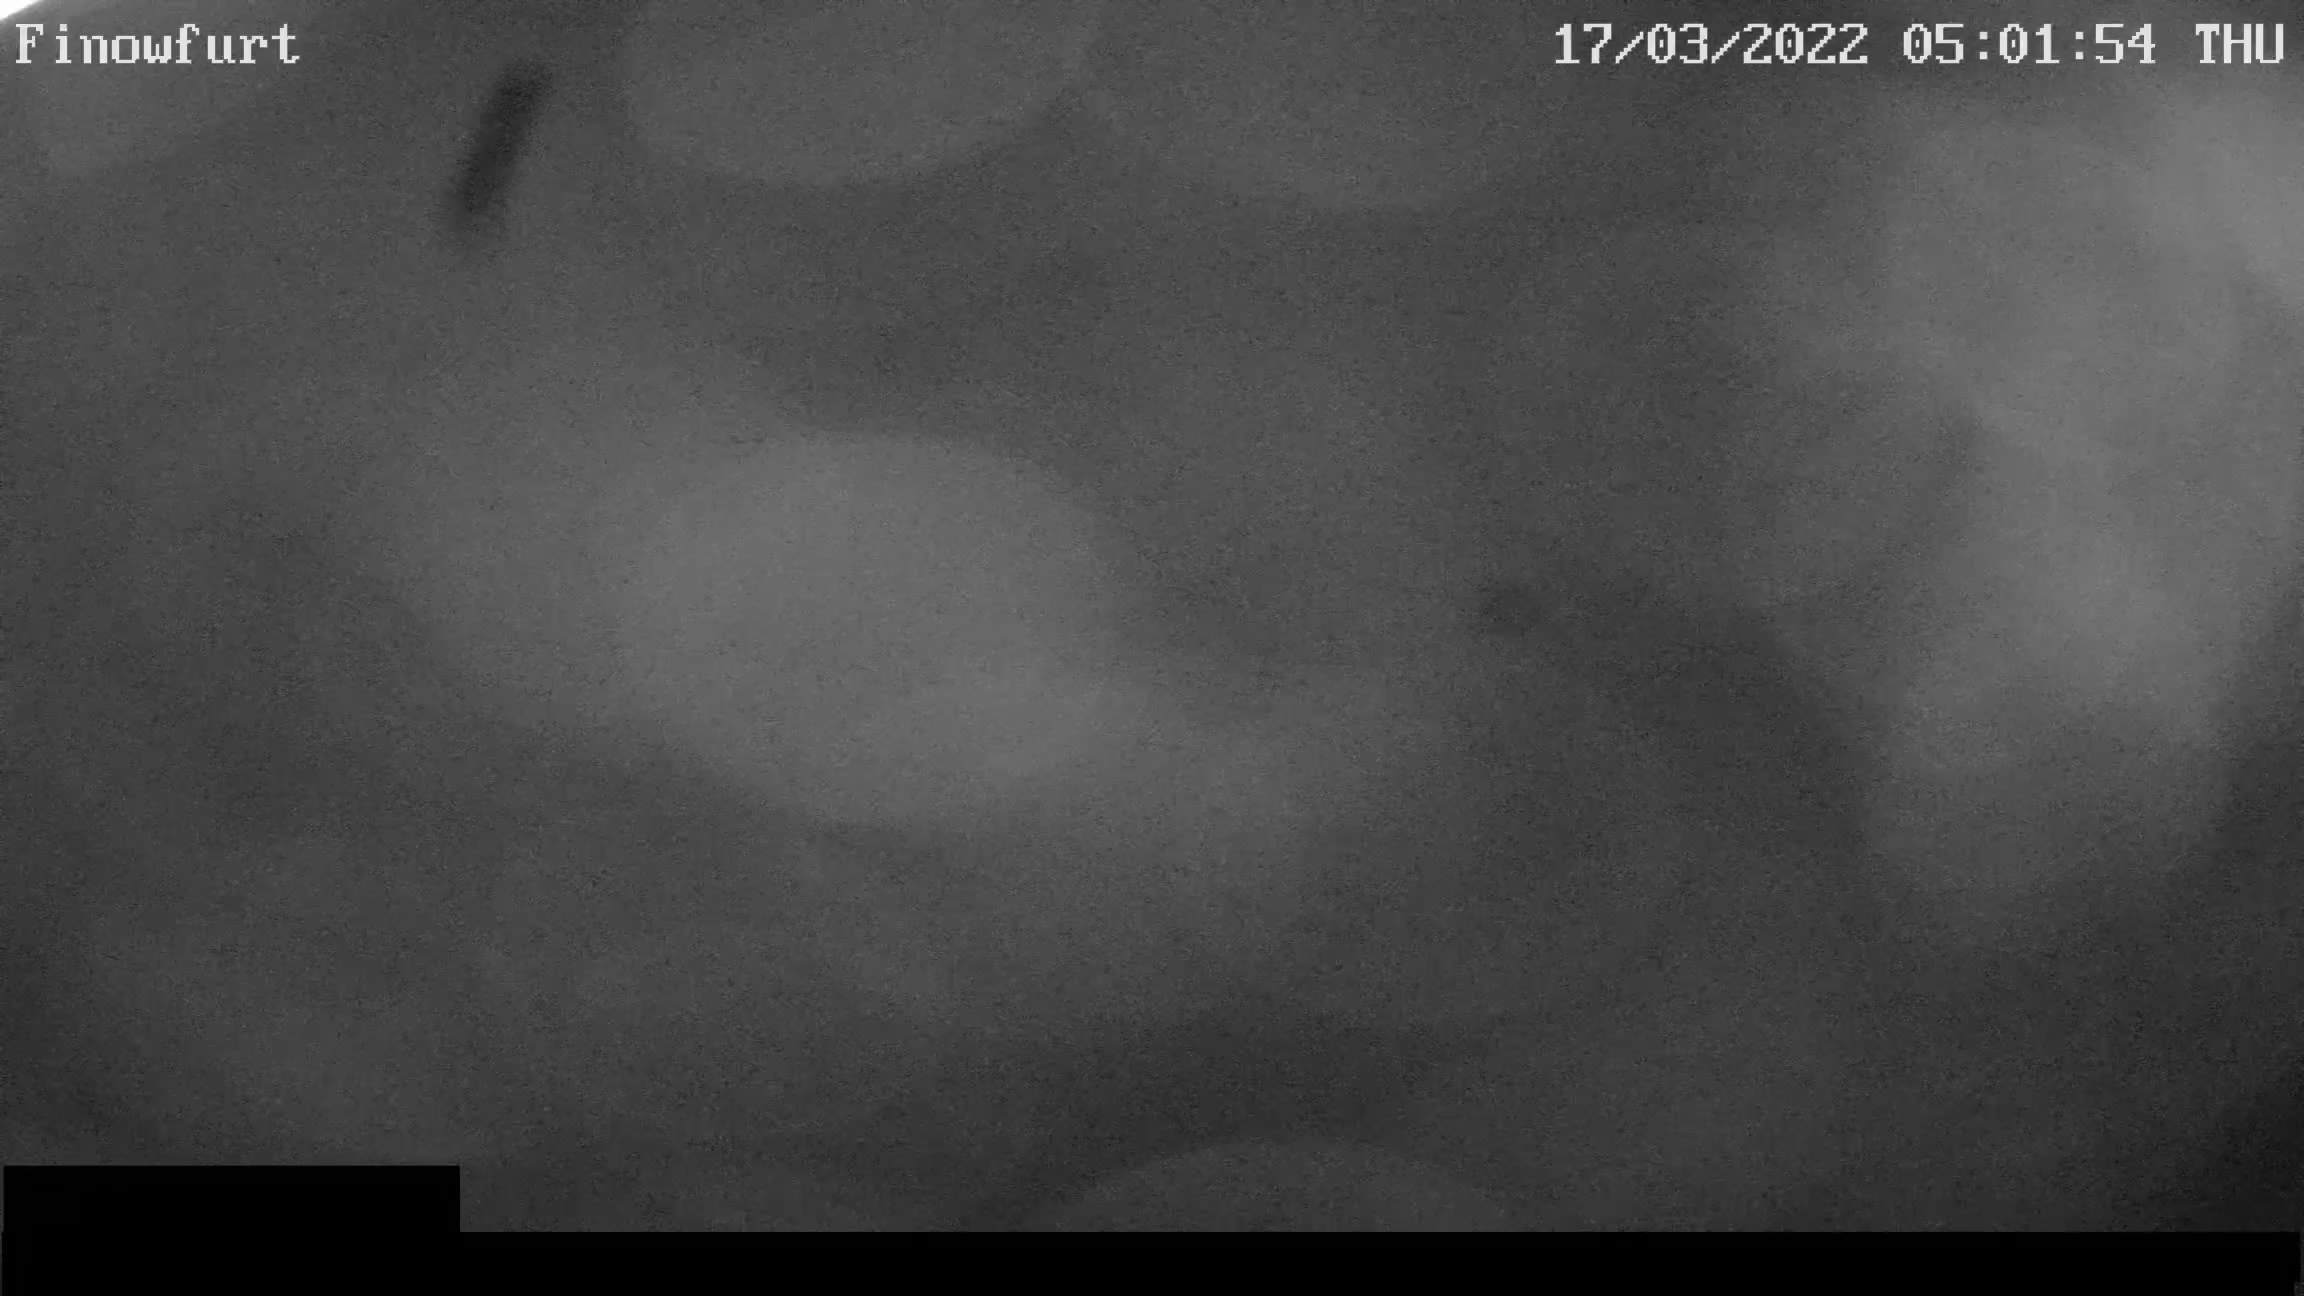 Webcam-Bild von 5 Uhr